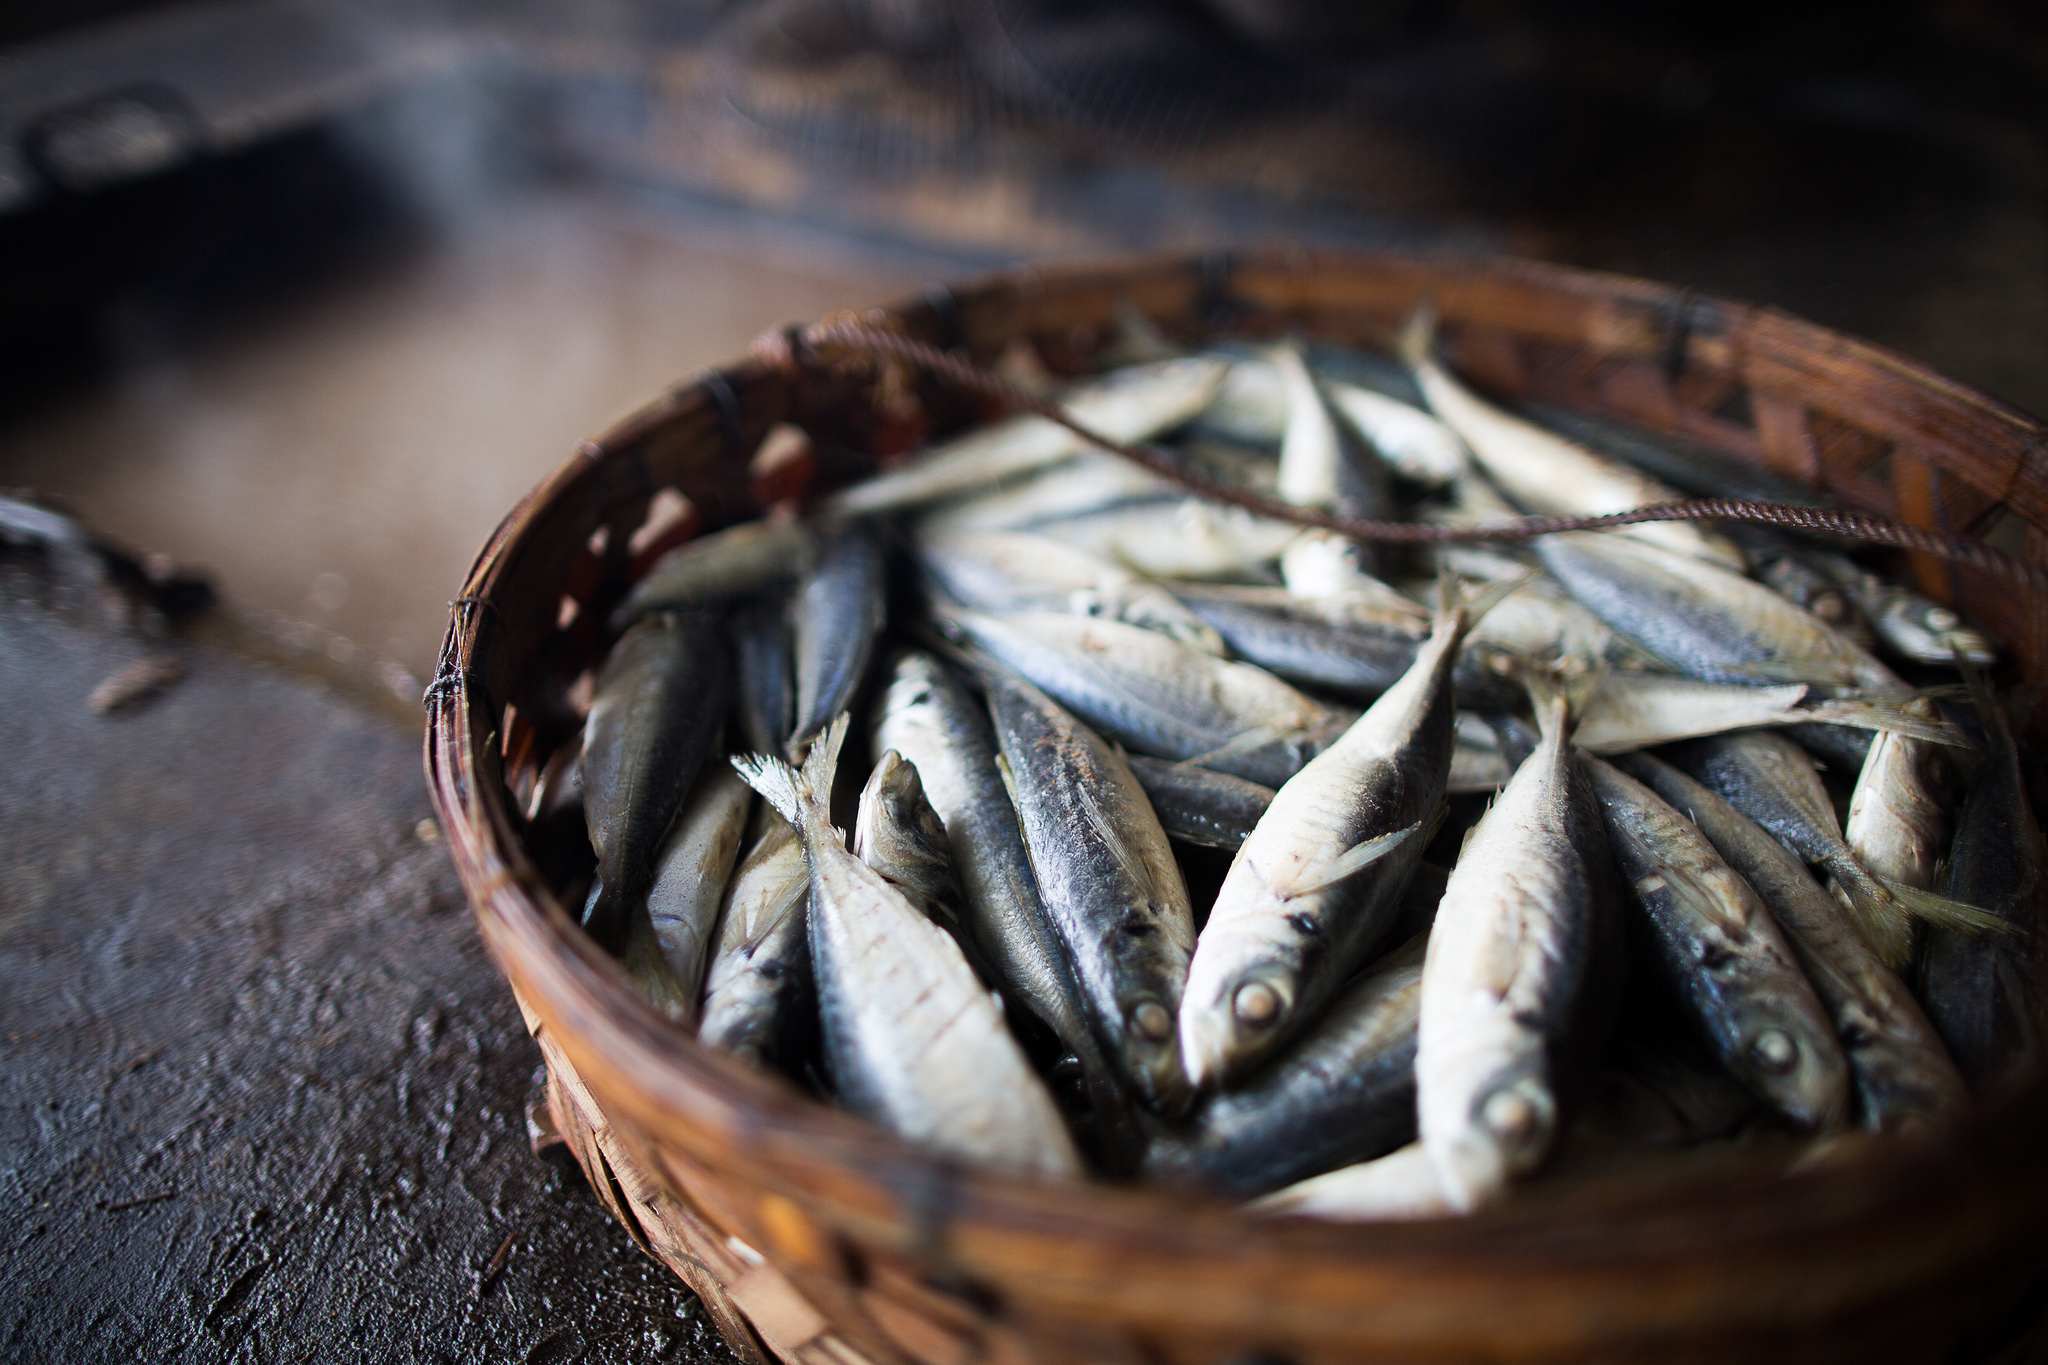 Les organitzacions ecologistes lamenten que el Ministeri reobri la pesca de la sardina ibèrica tot i estar a la vora del col·lapse